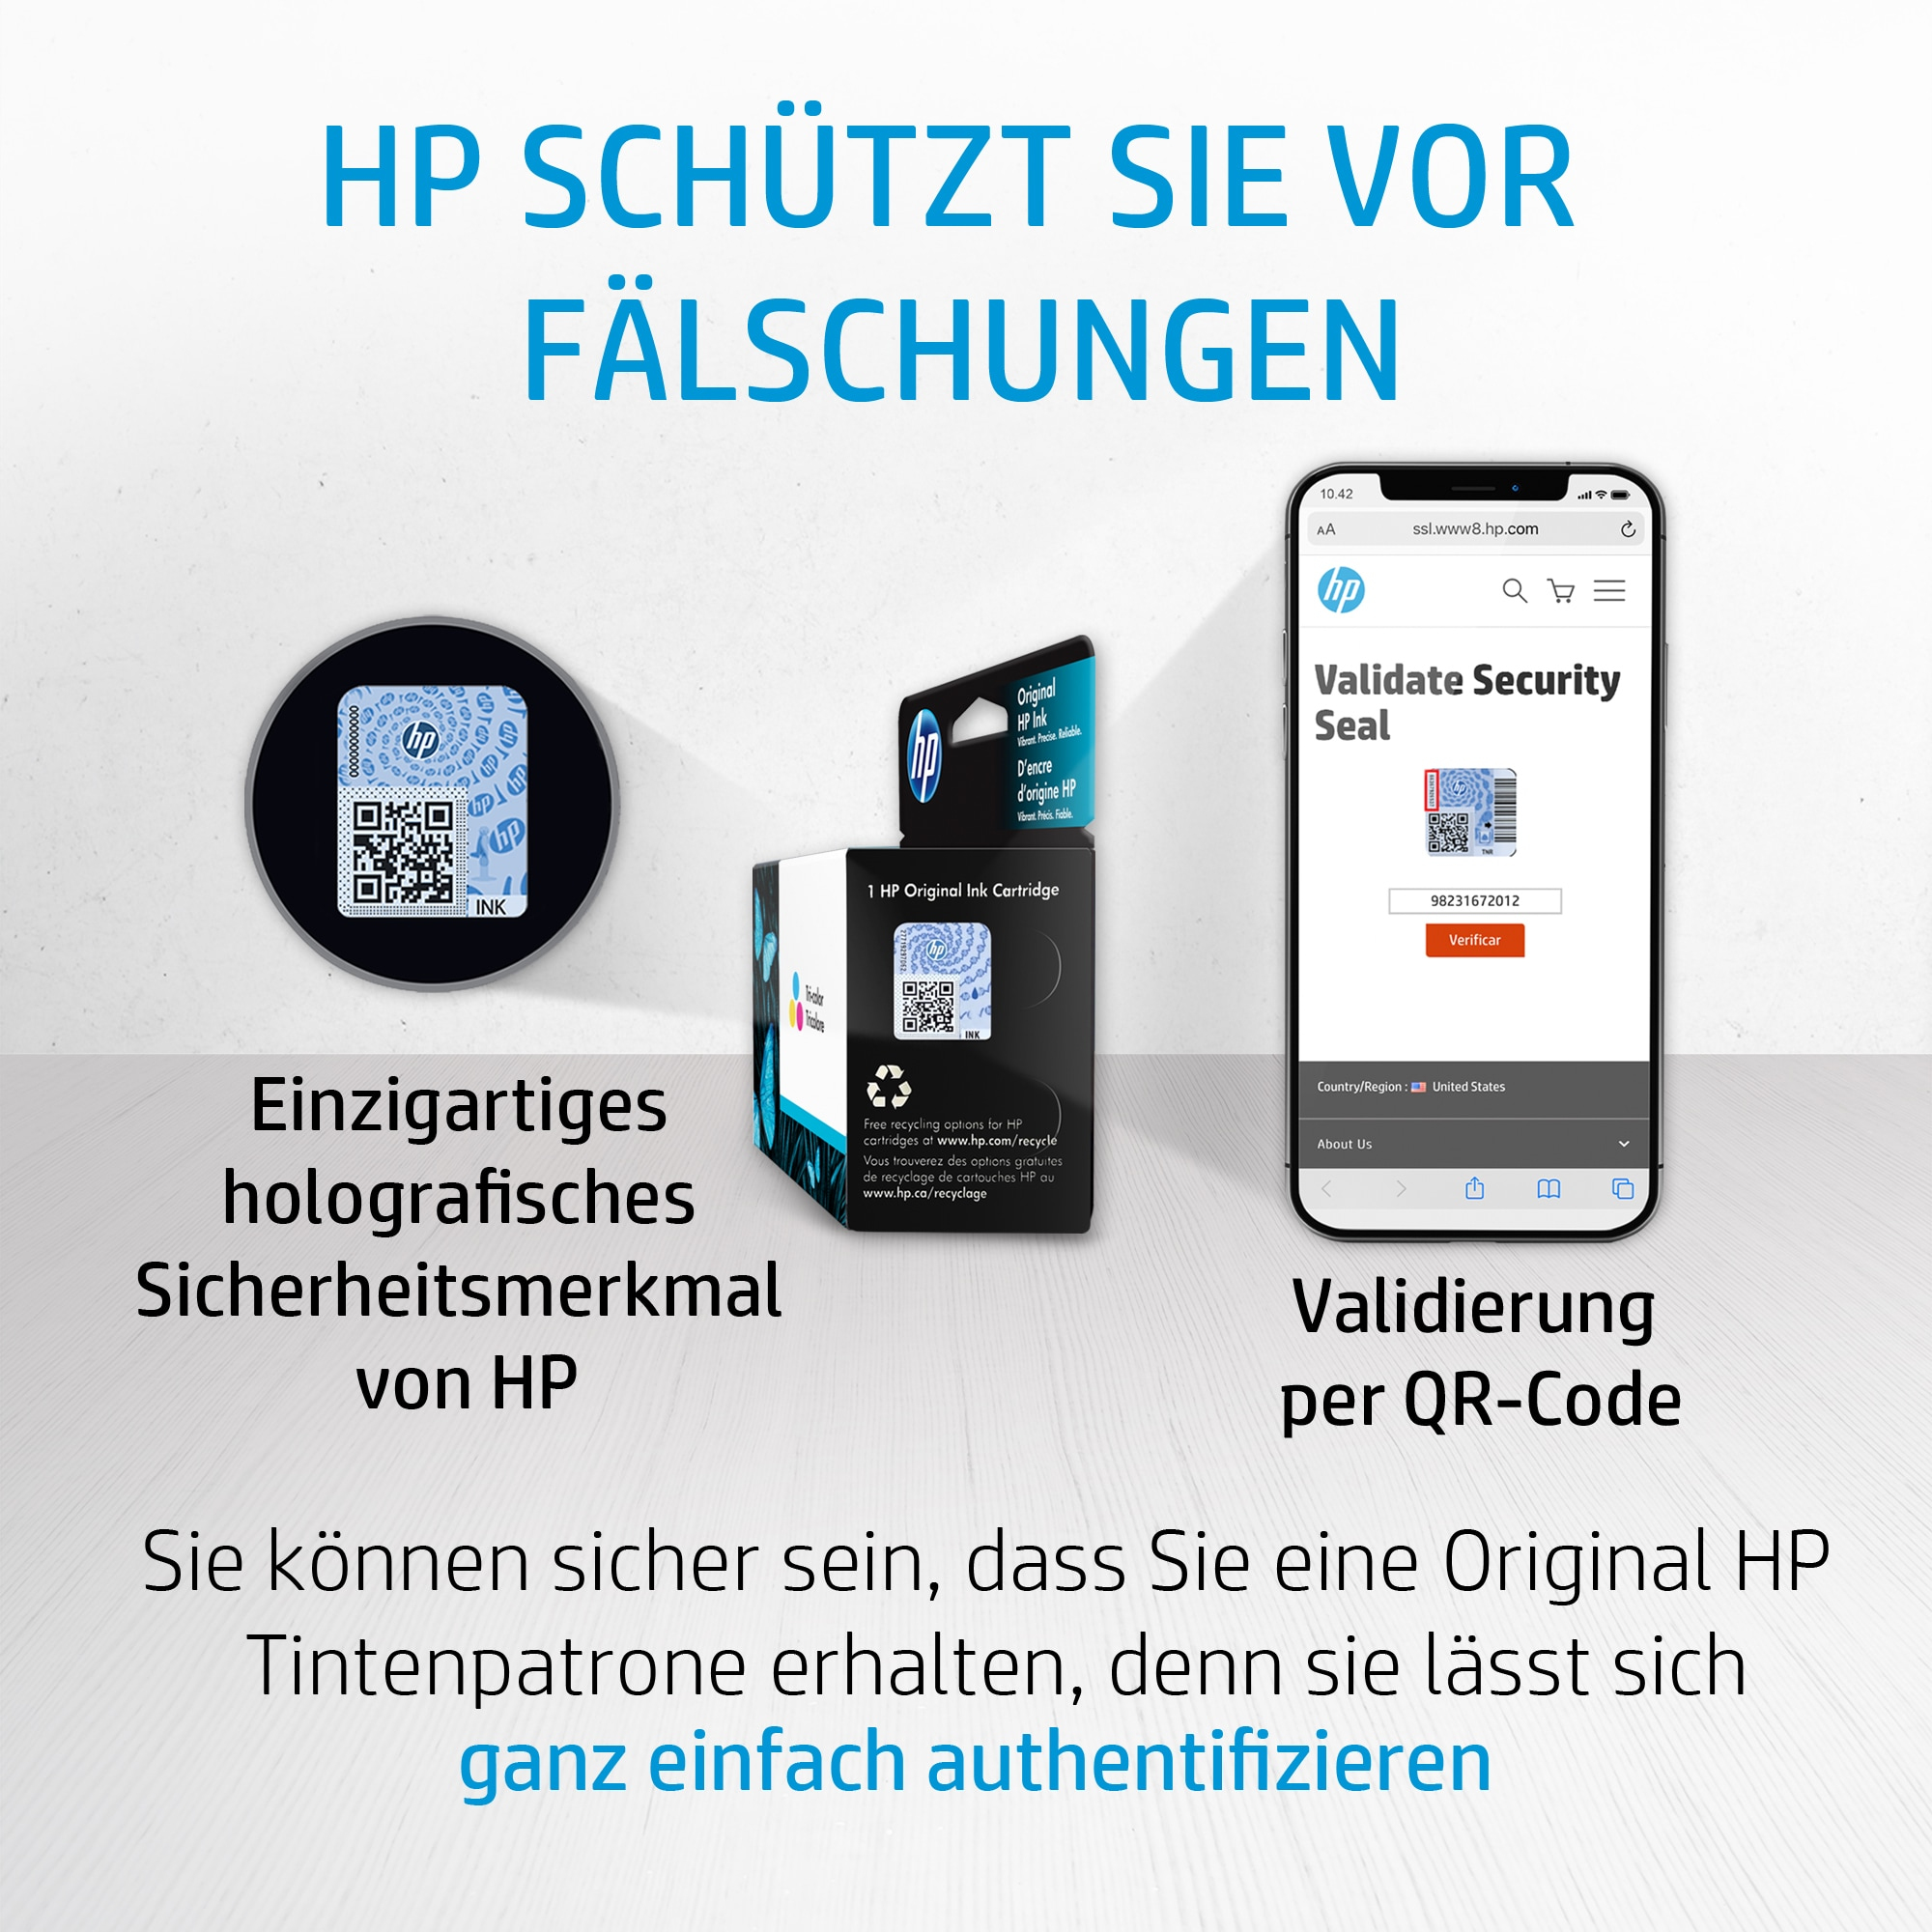 HP 62 Cartouche d'encre noire authentique (C2P04AE) pour HP Officejet  Mobile 250, HP Envy 5540/